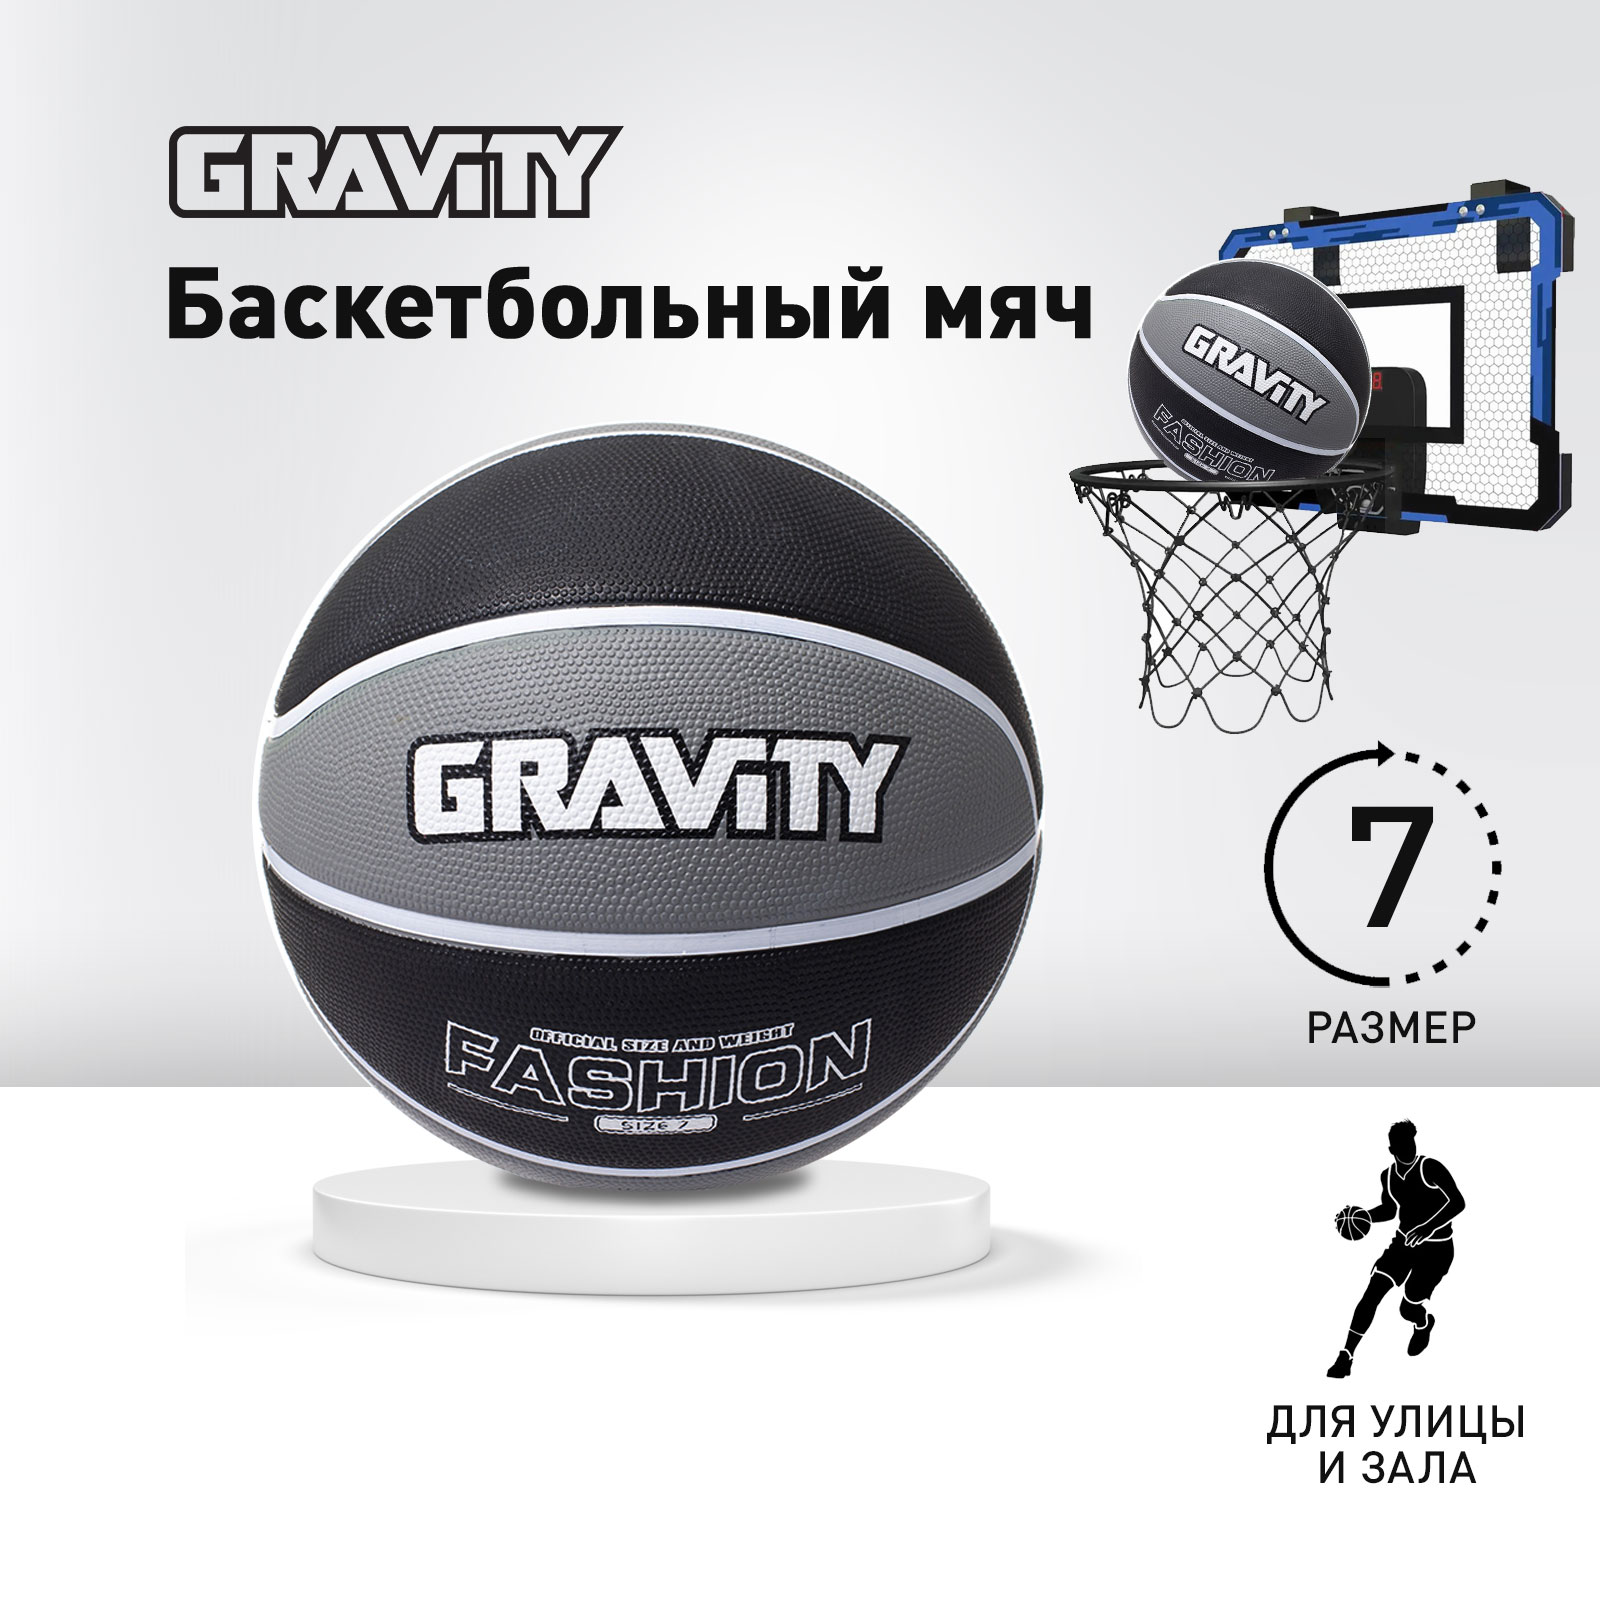 Баскетбольный мяч Gravity, резиновый, черно-серый, размер 7